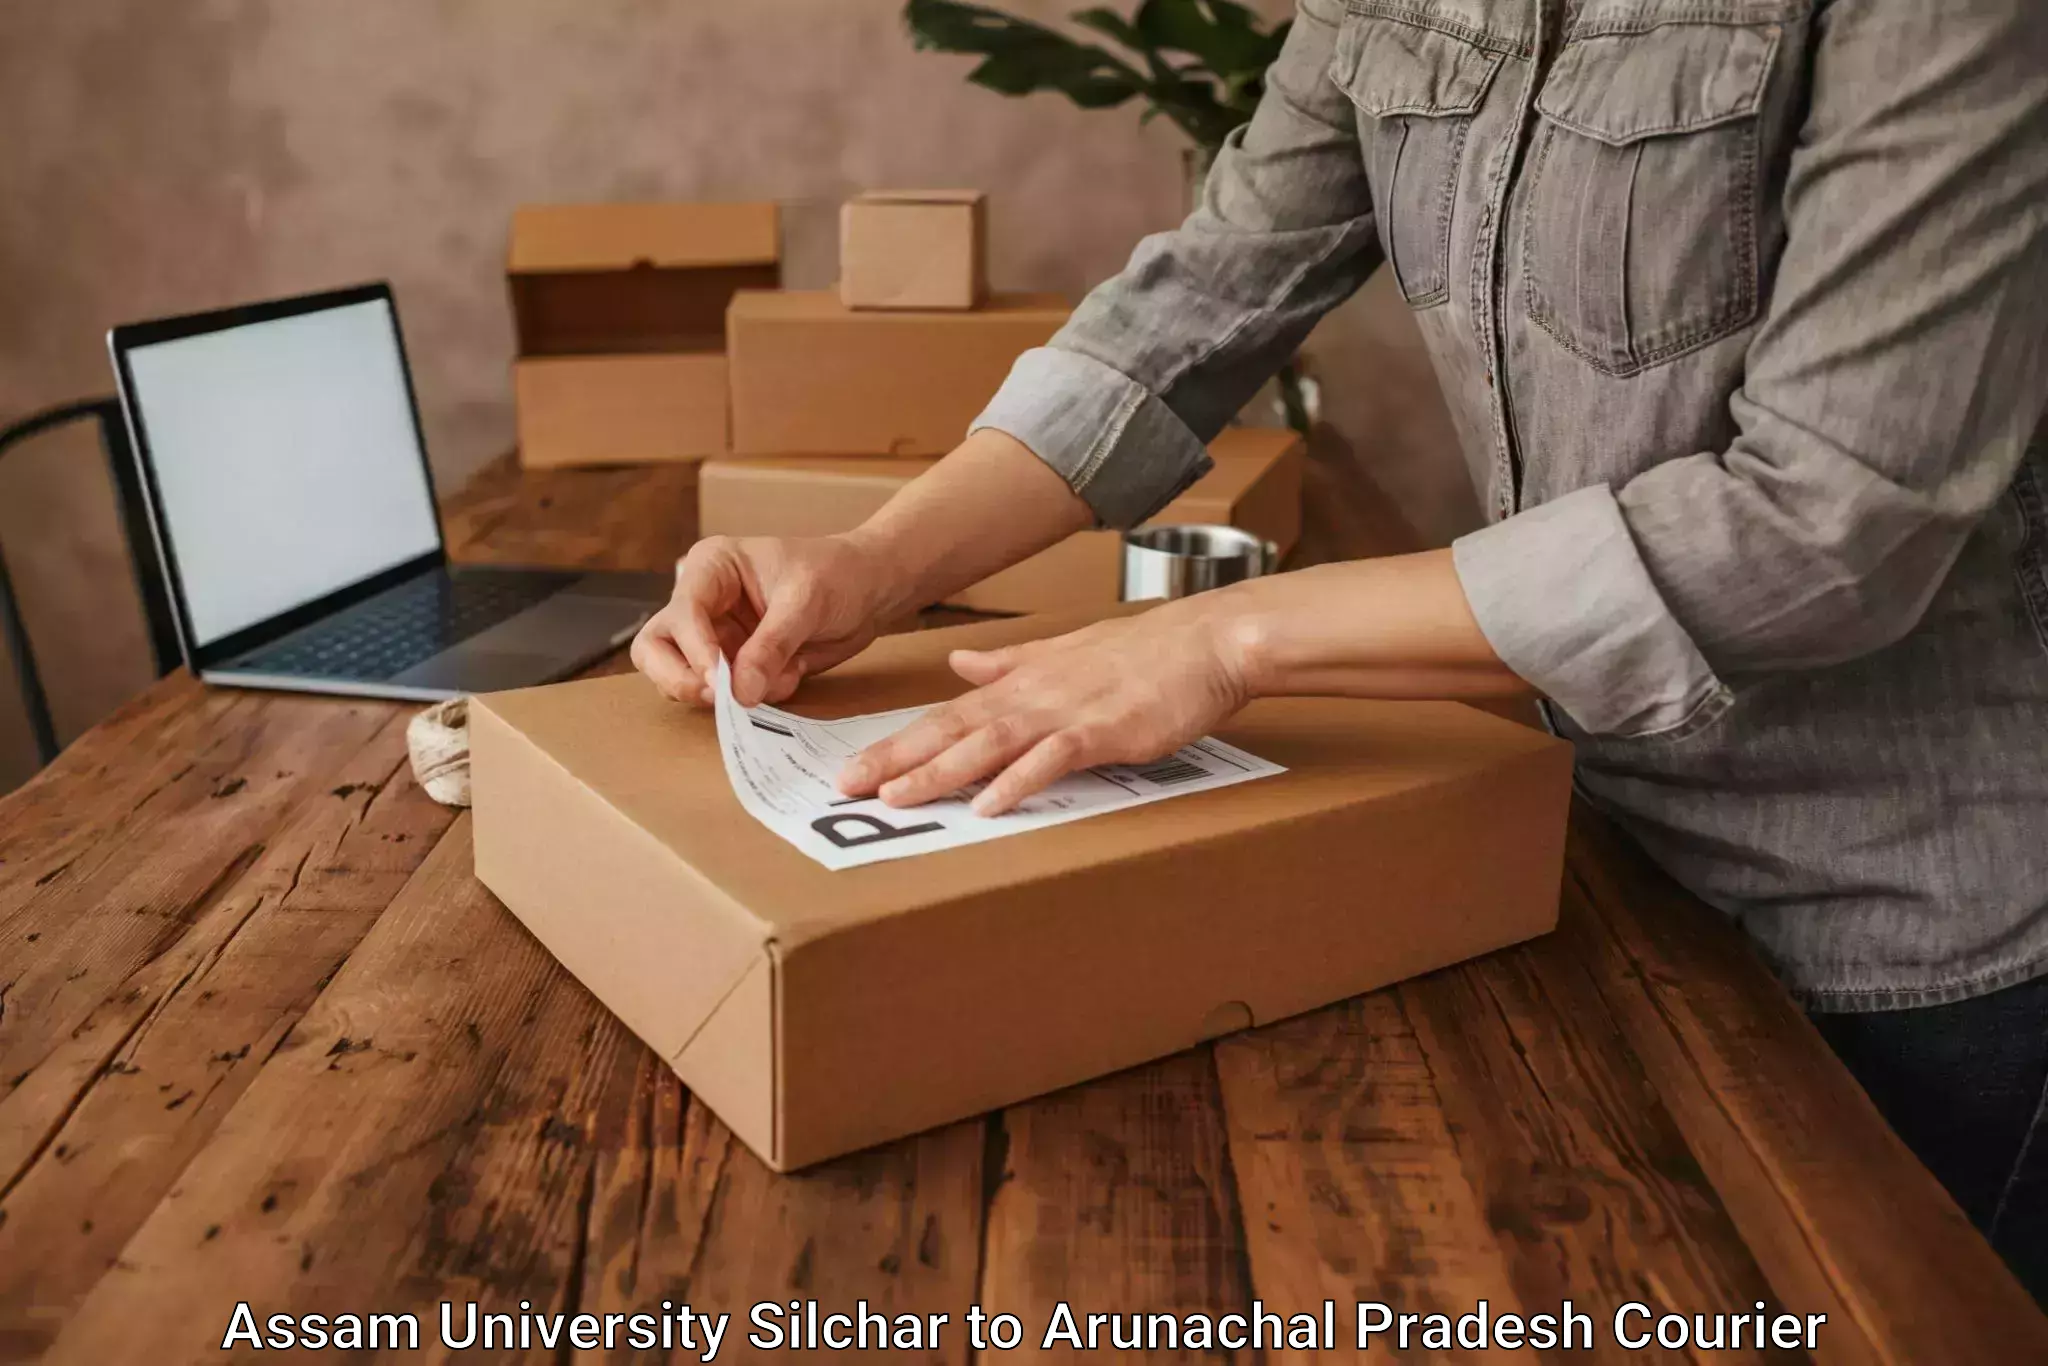 Courier service comparison Assam University Silchar to Tirap